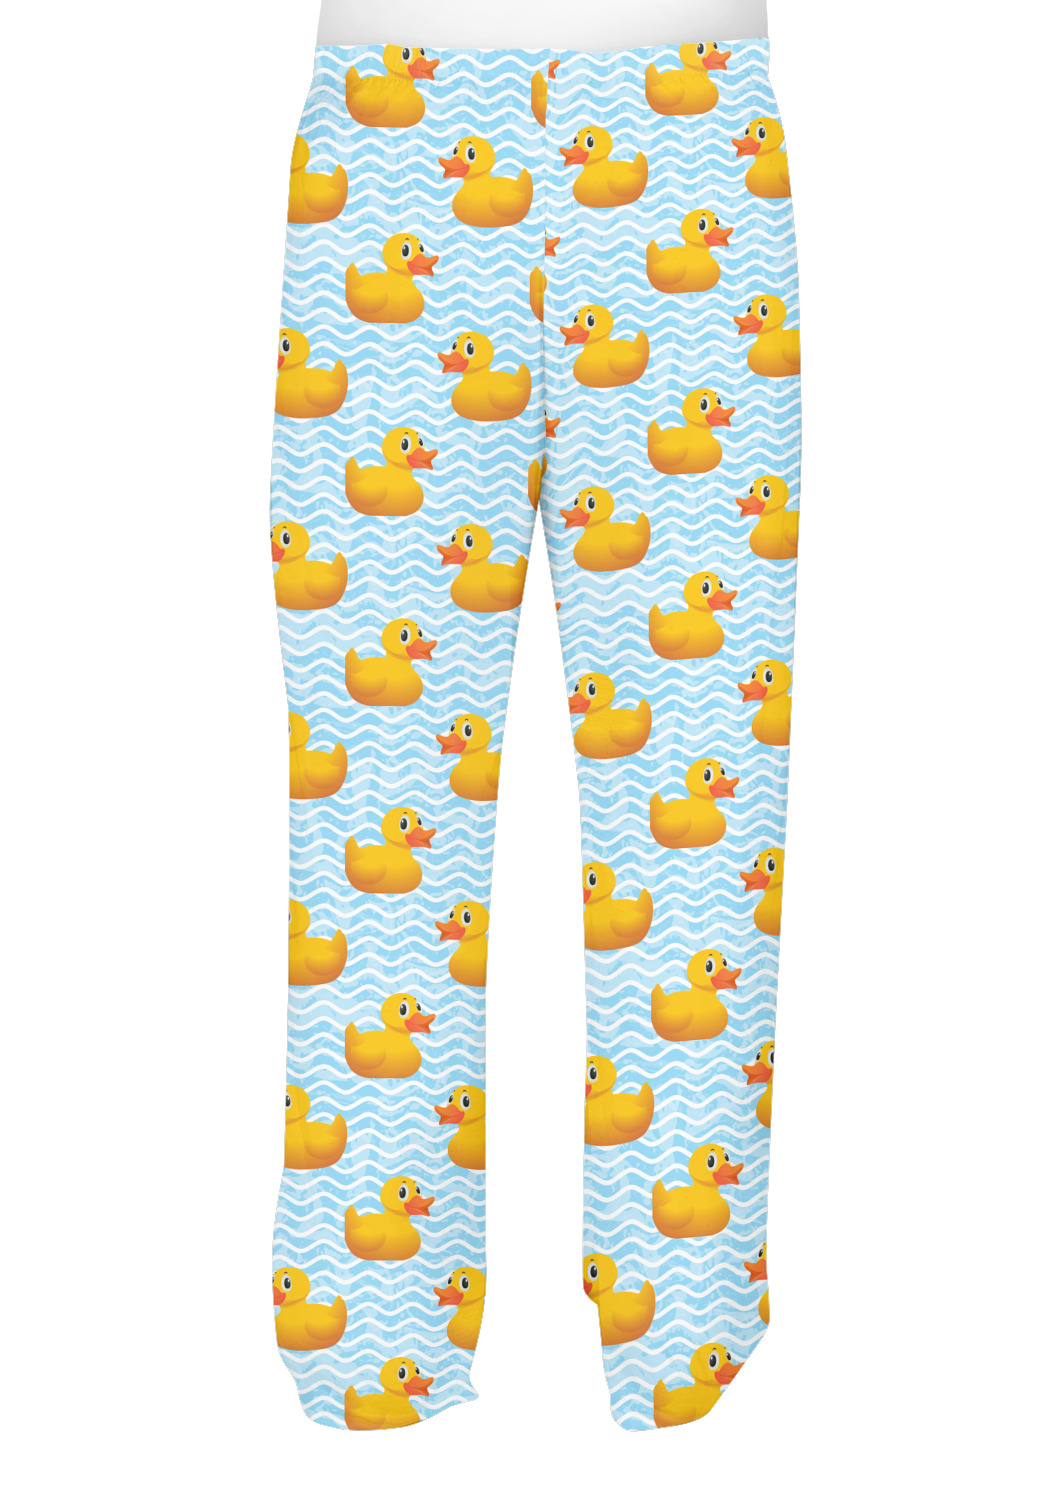 Rubber Duck Pajamas